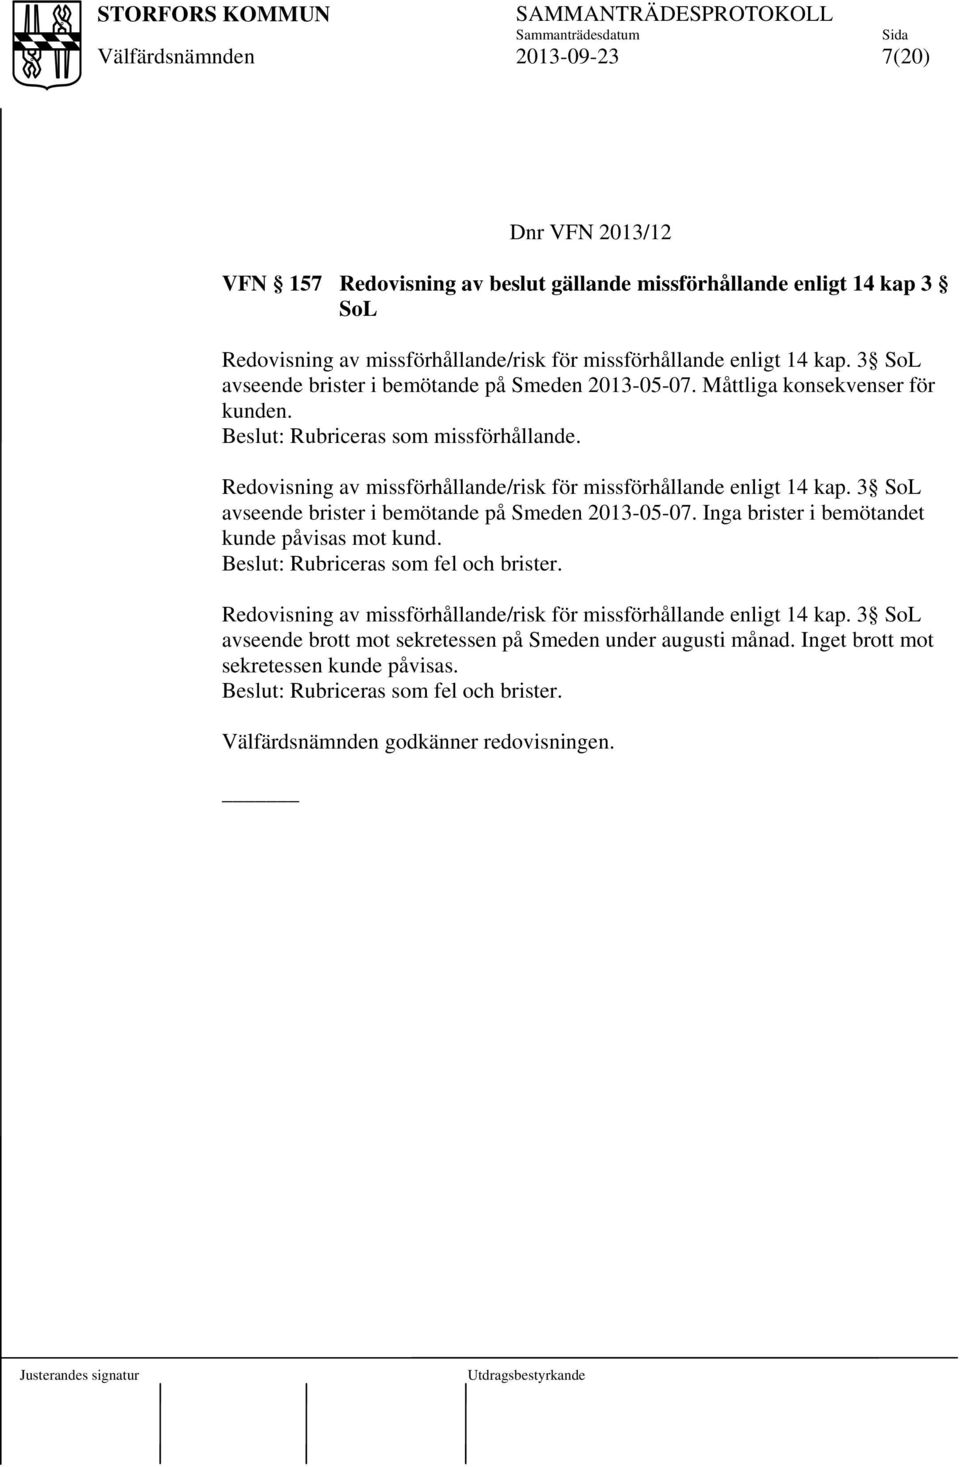 Redovisning av missförhållande/risk för missförhållande enligt 14 kap. 3 SoL avseende brister i bemötande på Smeden 2013-05-07. Inga brister i bemötandet kunde påvisas mot kund.